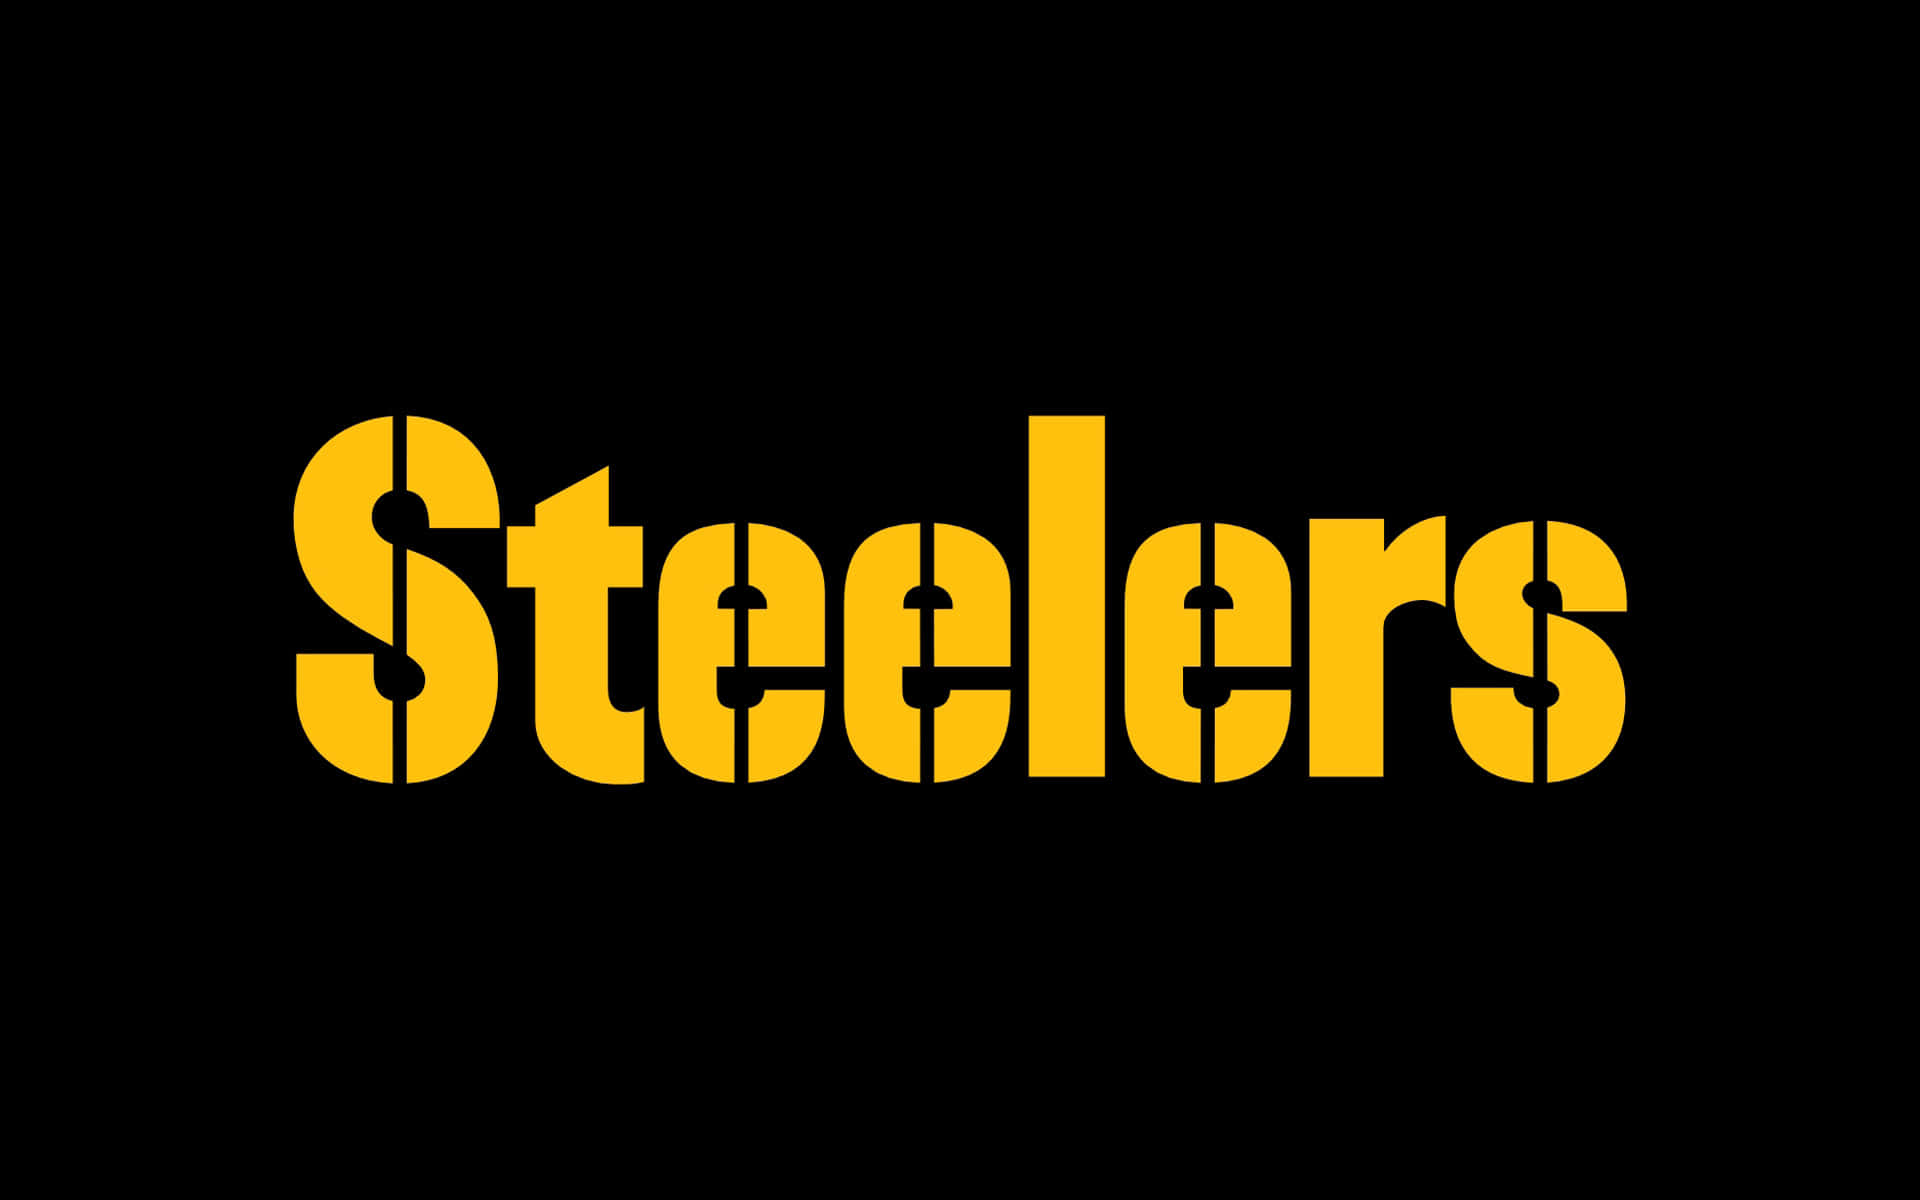 Steelersbakgrund